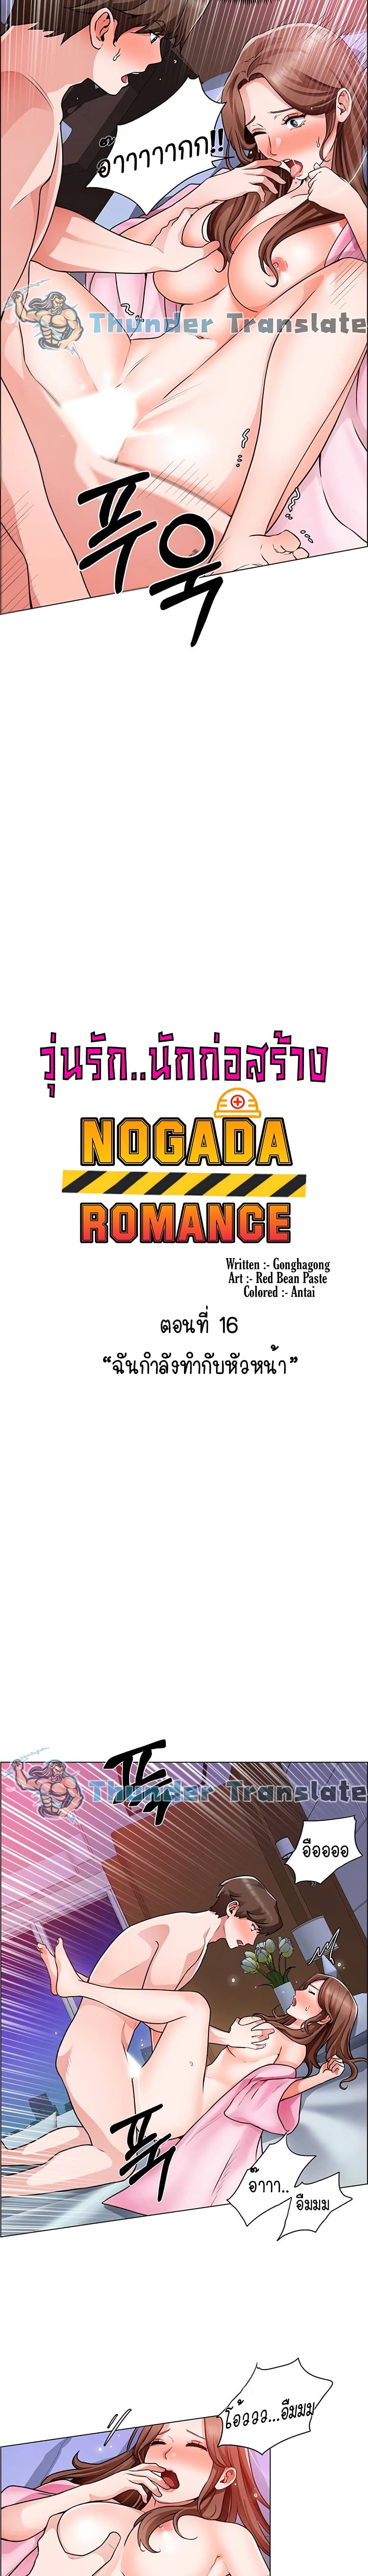 Nogada Romance 16 (3)